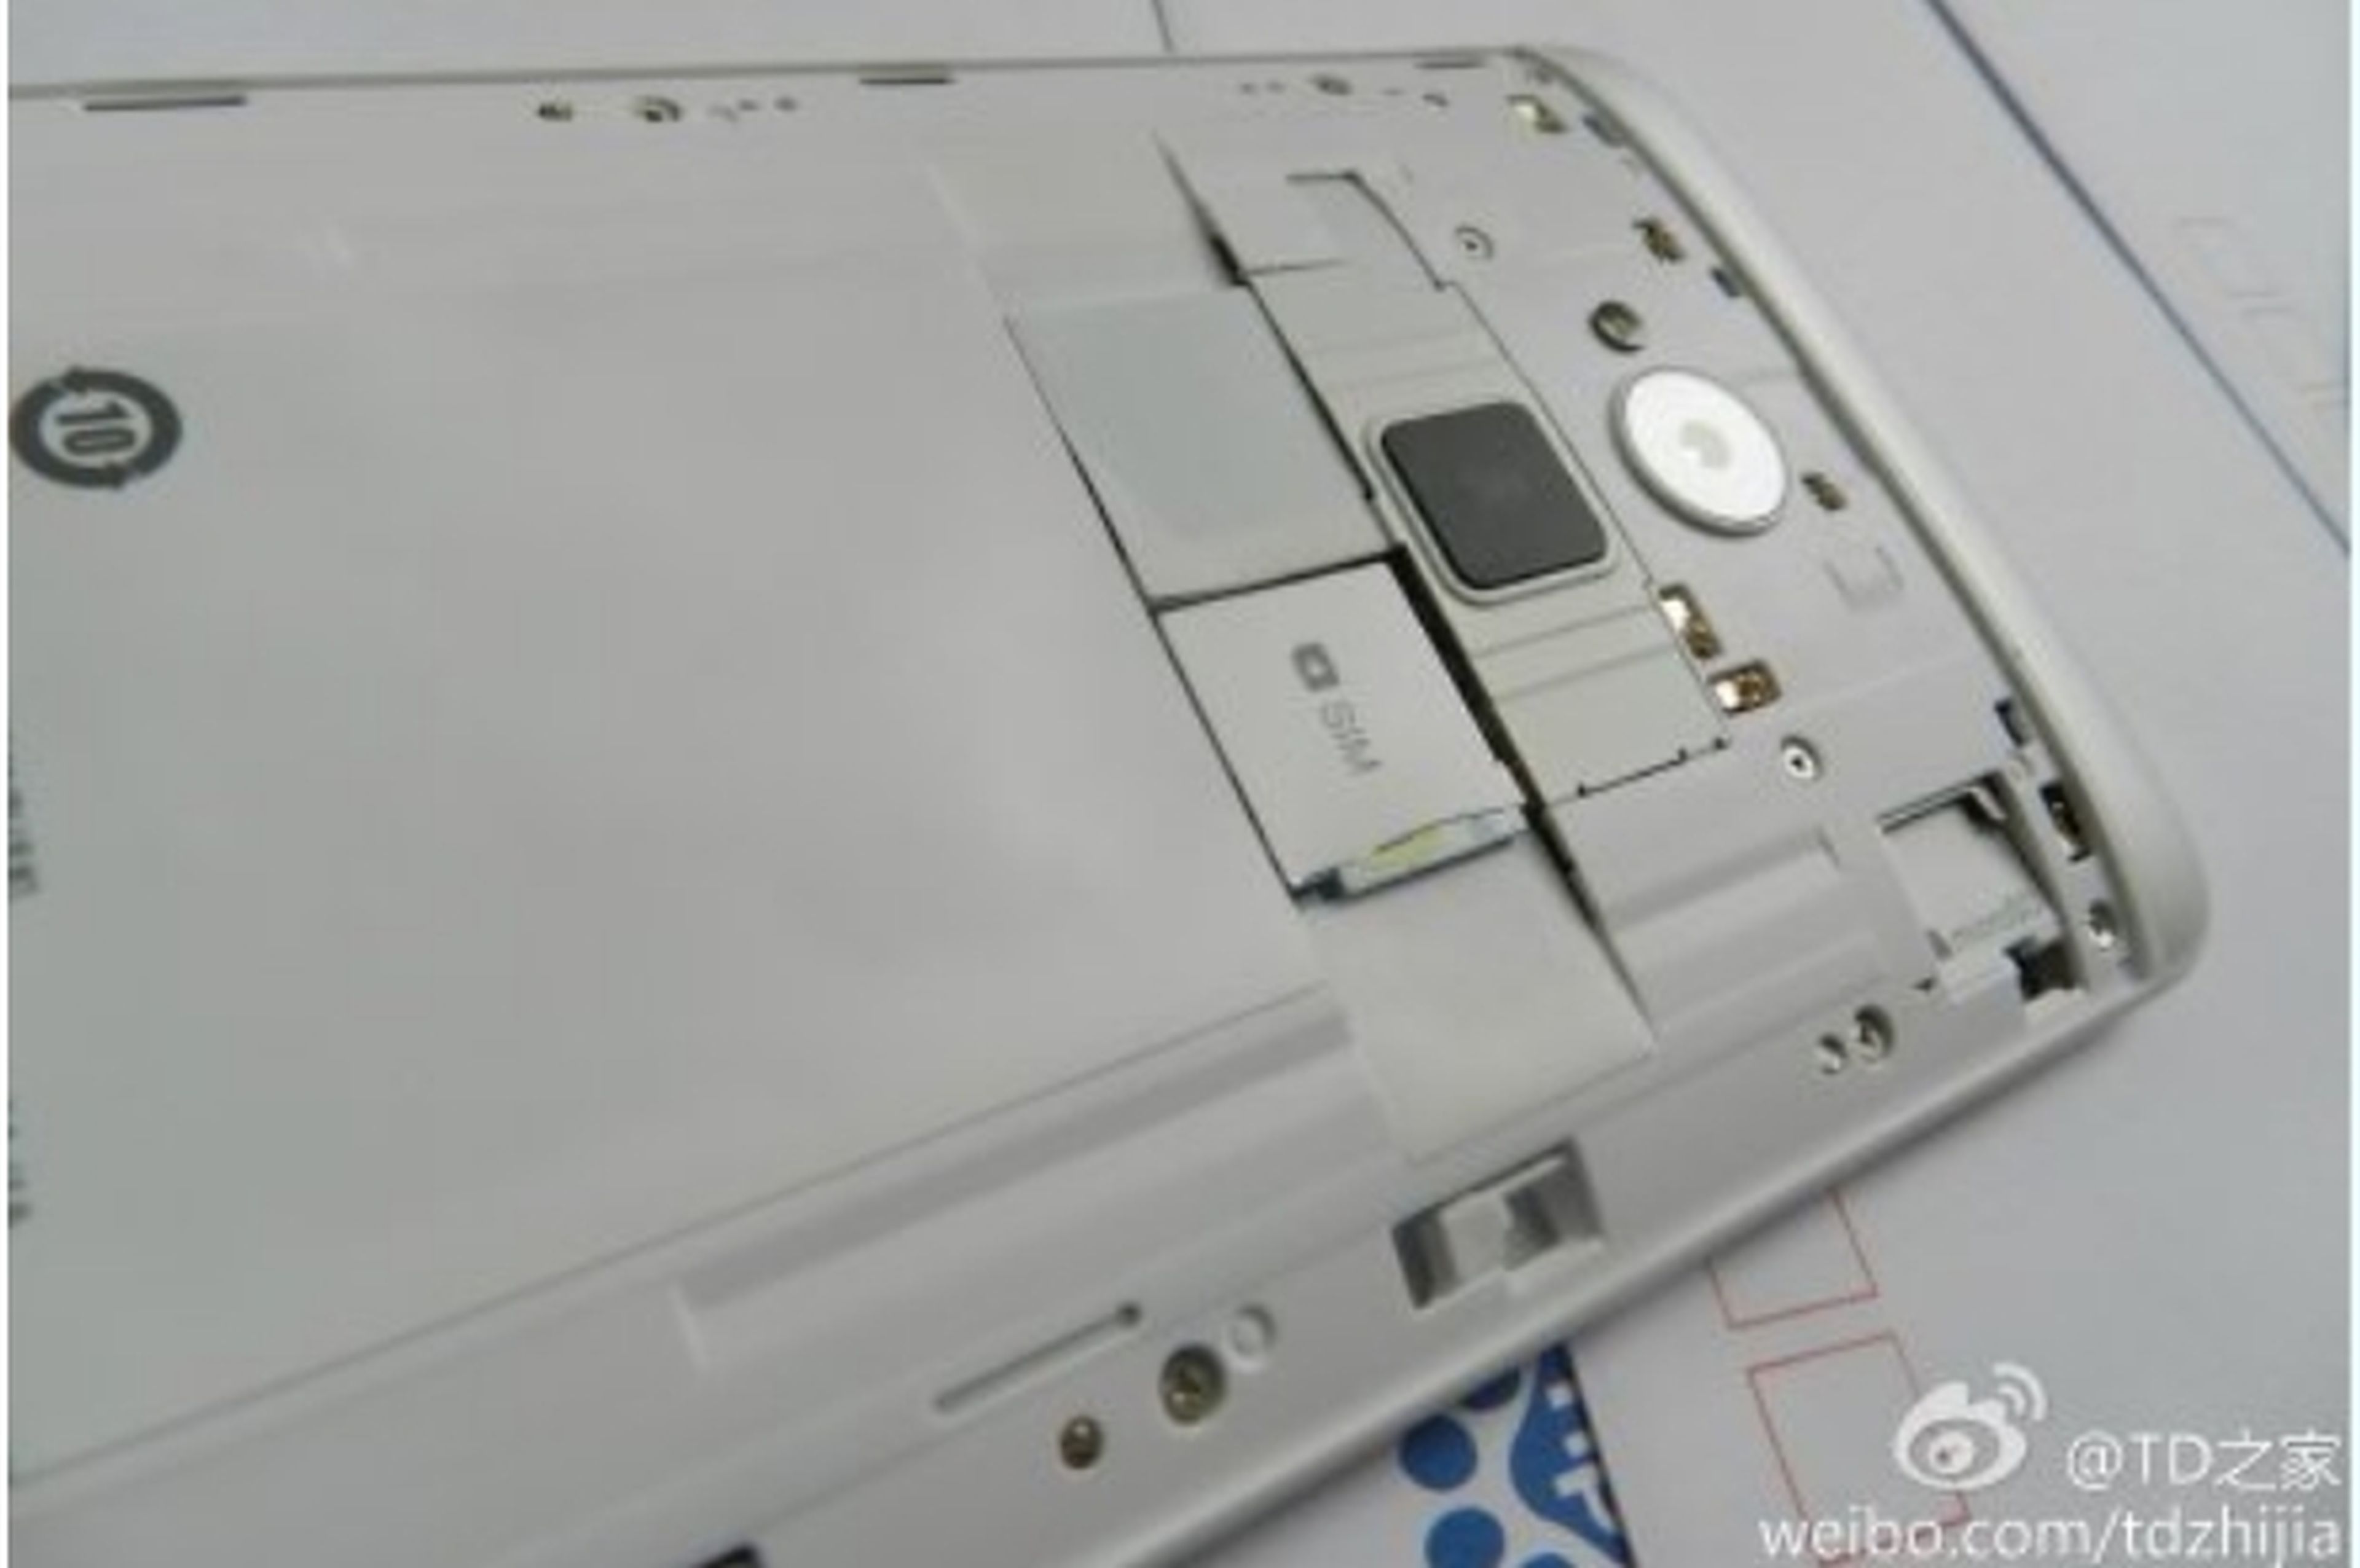 HTC One Max con lector de huellas confirmado